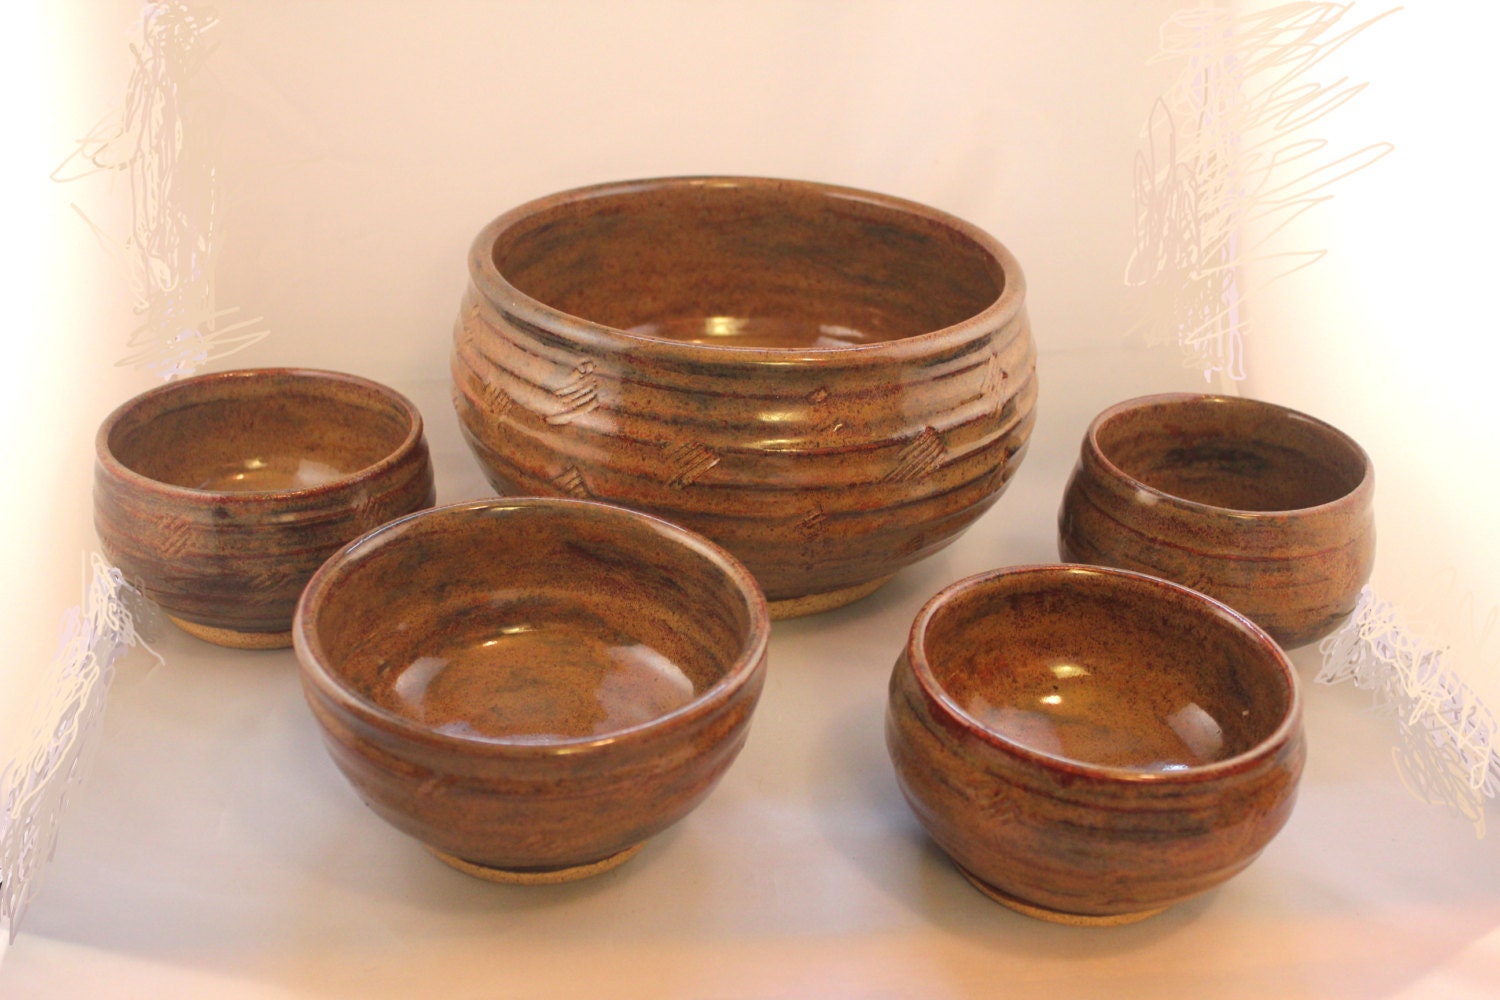 Serving Bowl 5 piece set handthrown pottery rust brown, Pottery Serving Set, Salad Bowl Set, Gift Serving Set - inHIShandsart